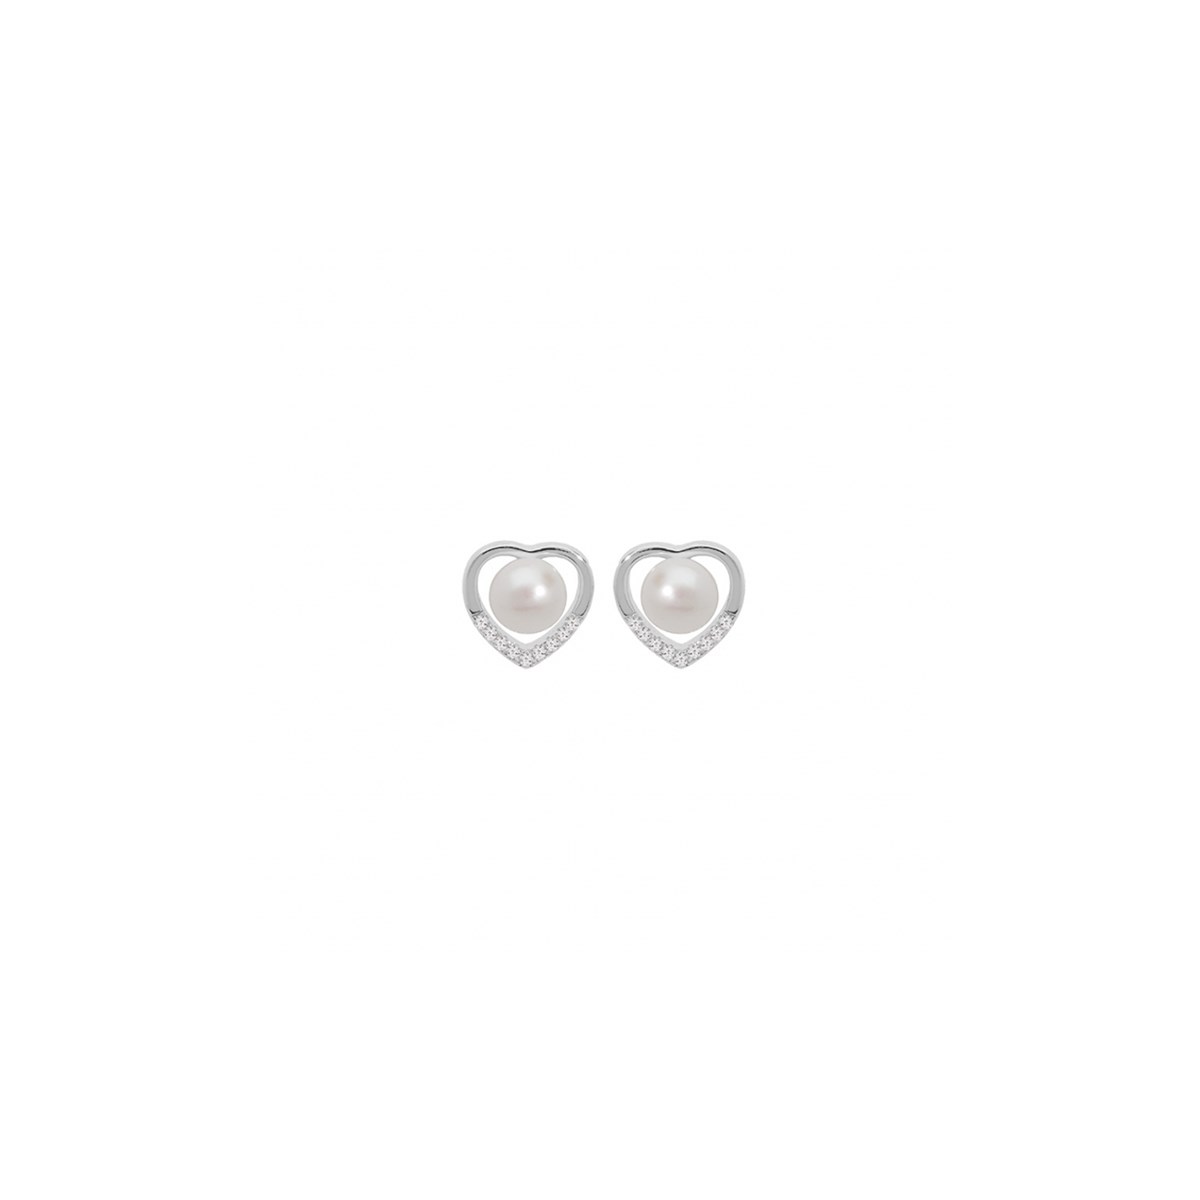 Boucles d'oreilles Coeur Argent - Perles d'eau douce